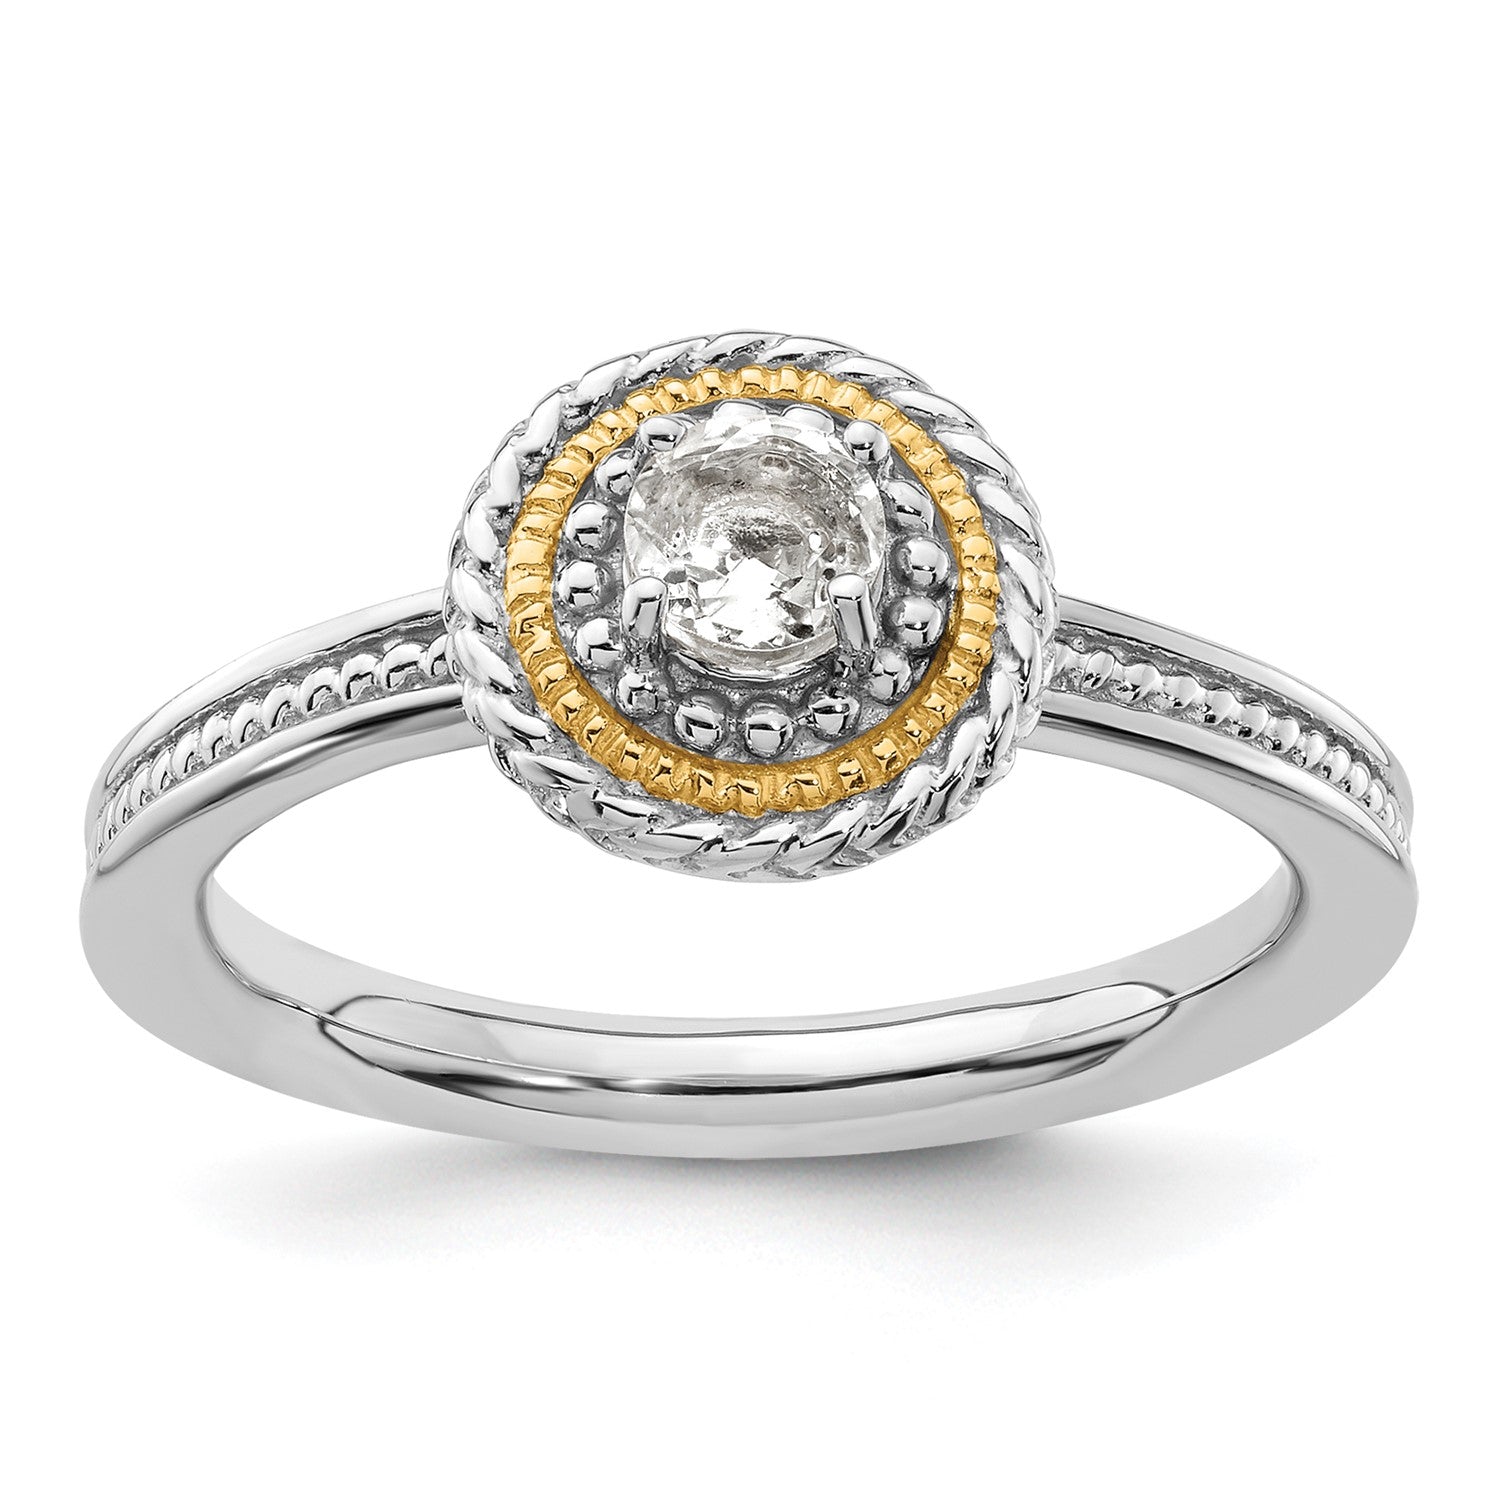 Sterling silver och 14 k gult guld staplingsbara uttryck Sterling silver Birthstone Ring fina designersmycken för män och kvinnor